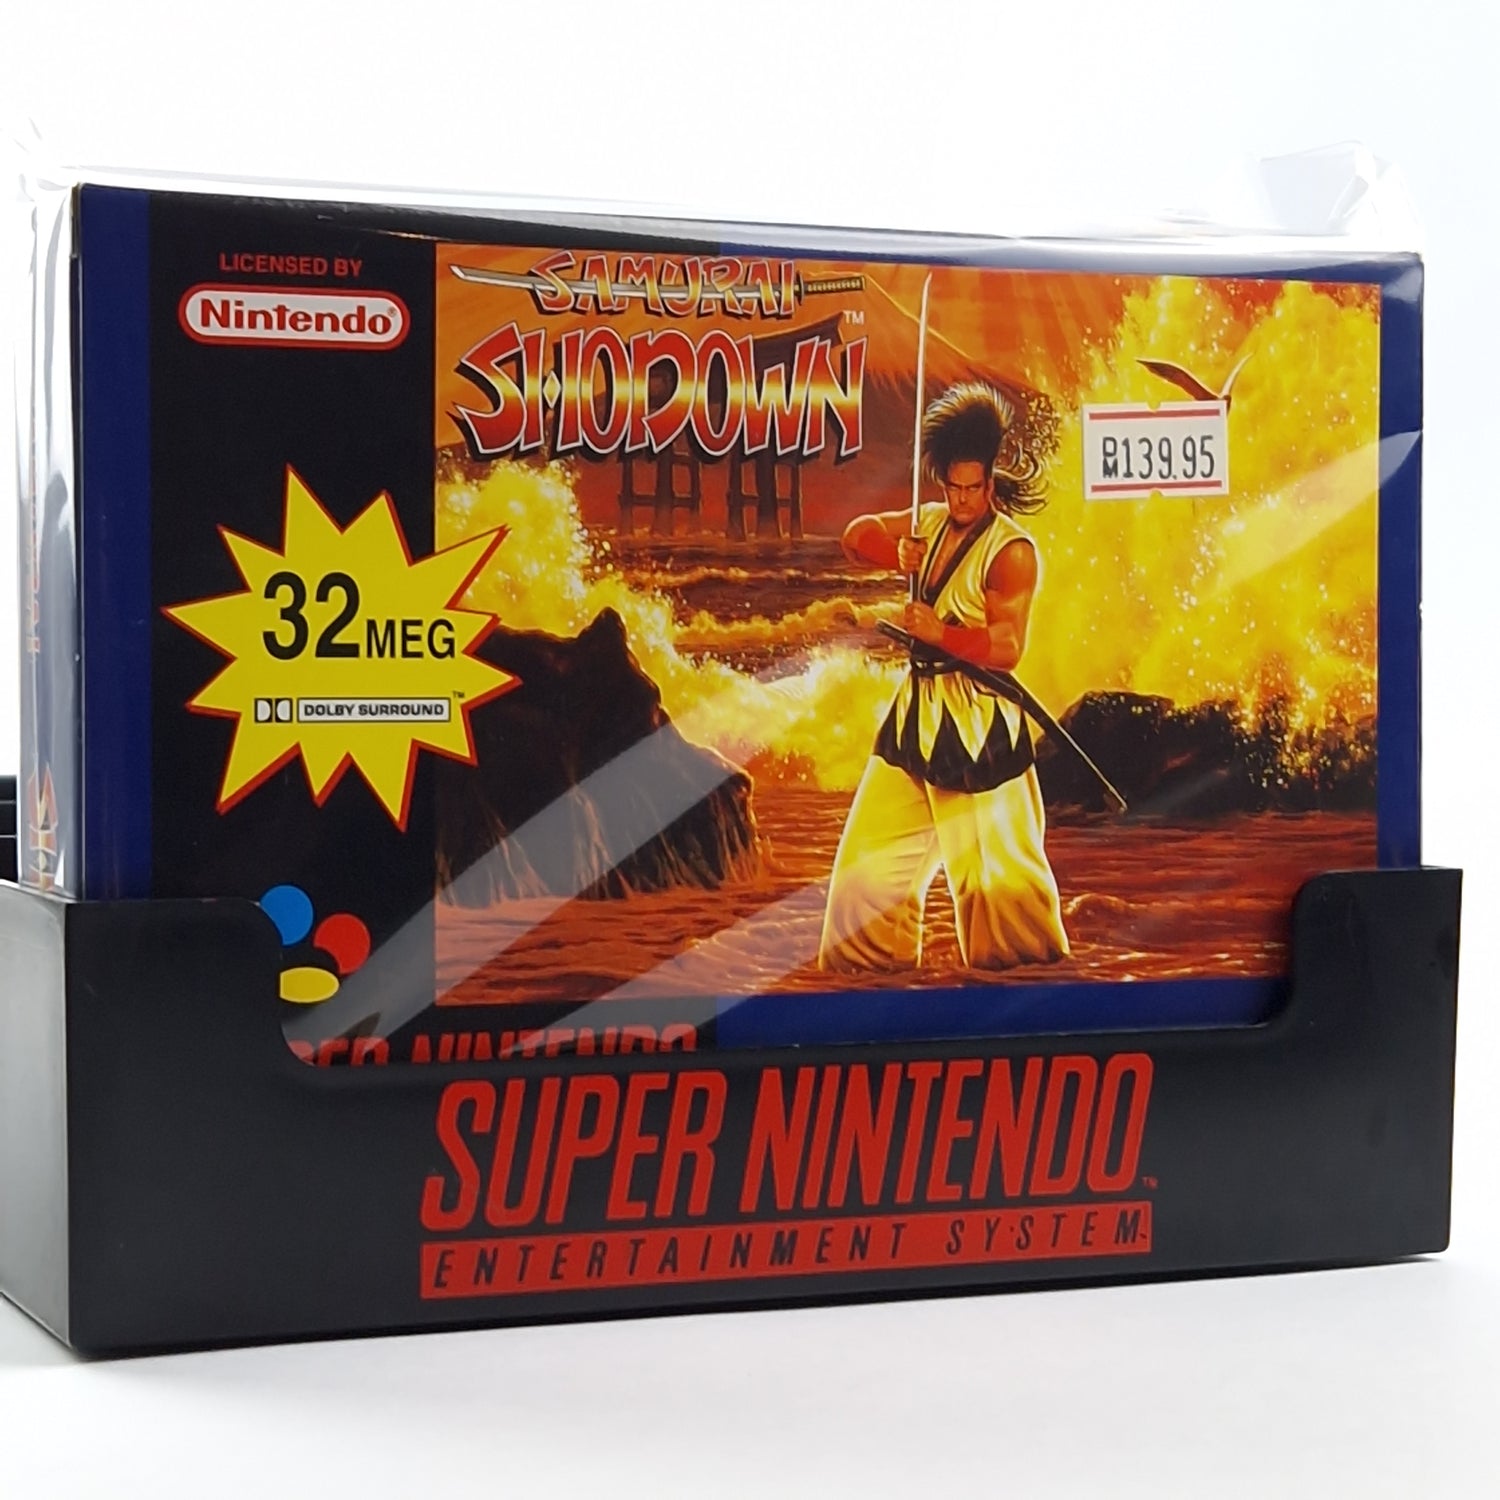 Super Nintendo Spiel : Samurai Shodown - Modul Anleitung OVP cib Box / SNES PAL